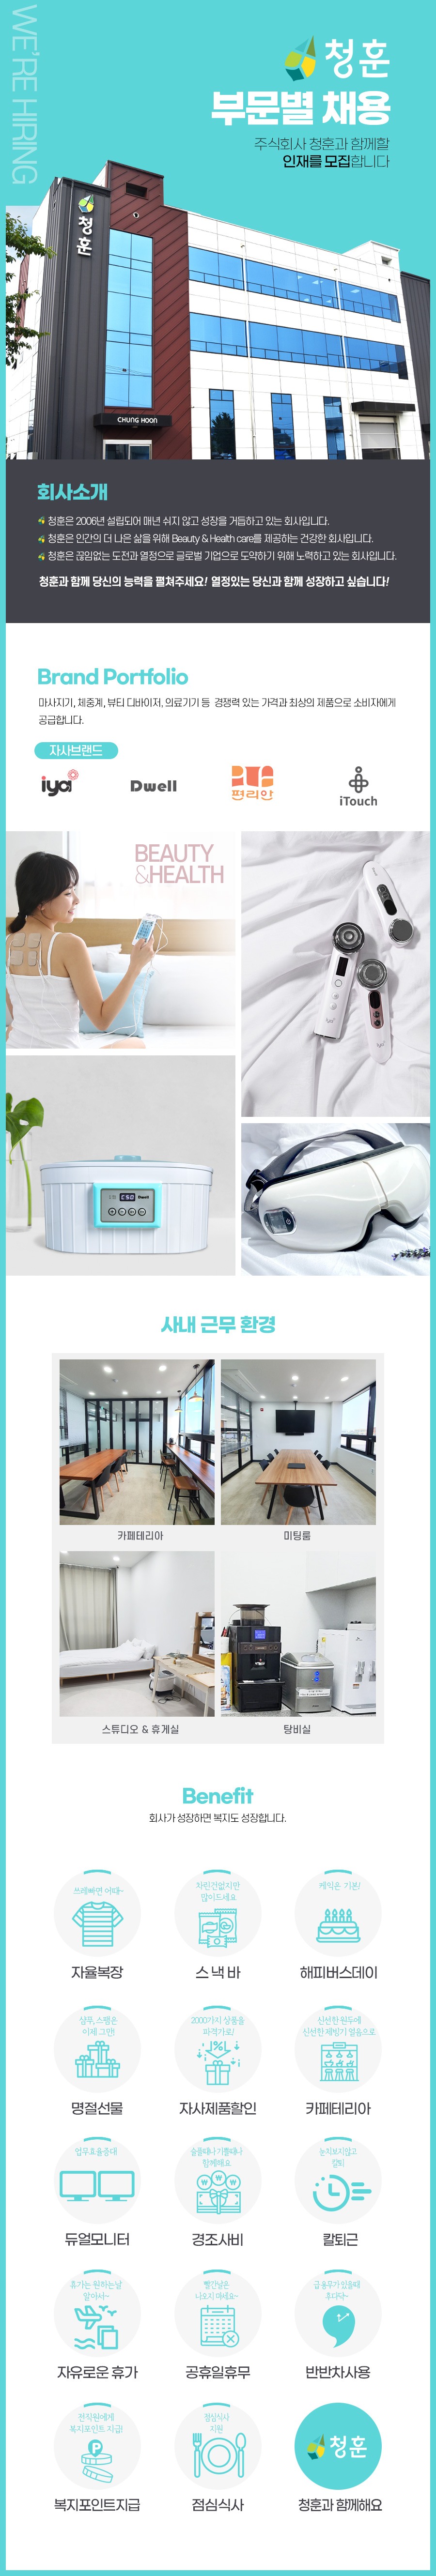 (주)청훈에서  온라인 쇼핑몰 관리 AMD  & MD , 마케팅 신입 경력직 모집